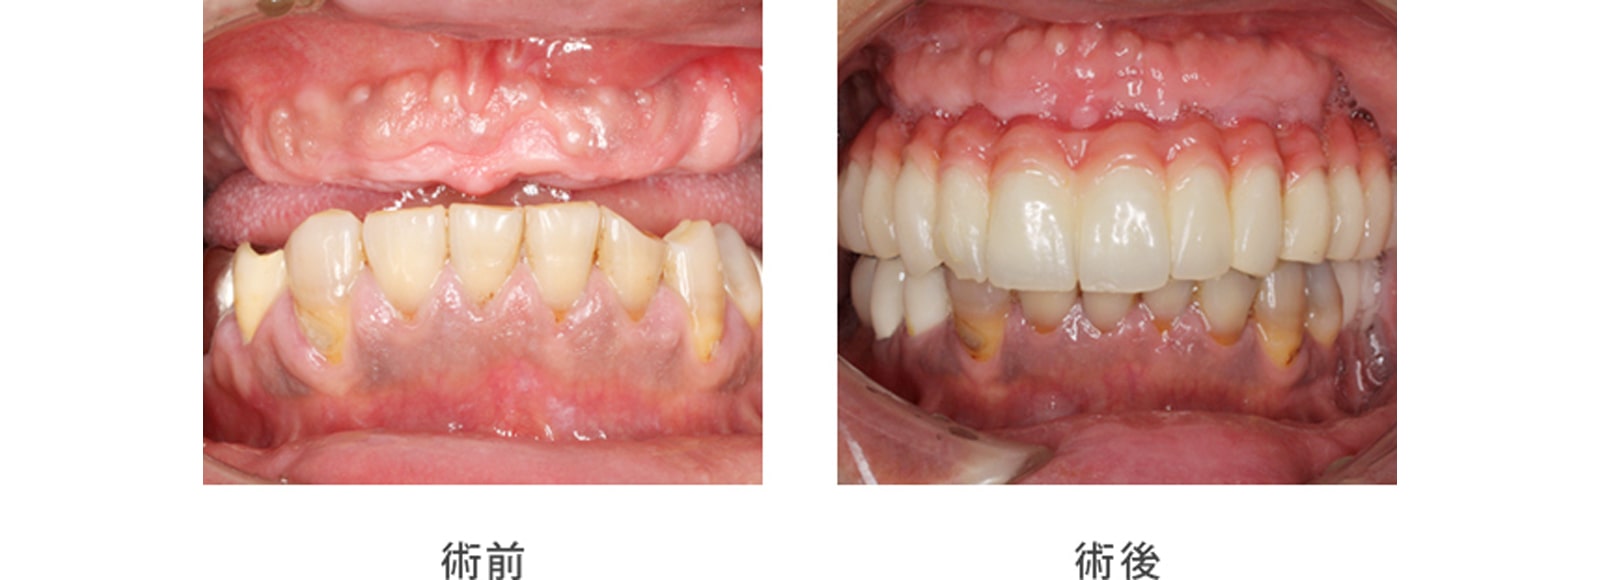 症例1. 他の歯科医院では固定性の歯で修復するのは困難と言われた症例